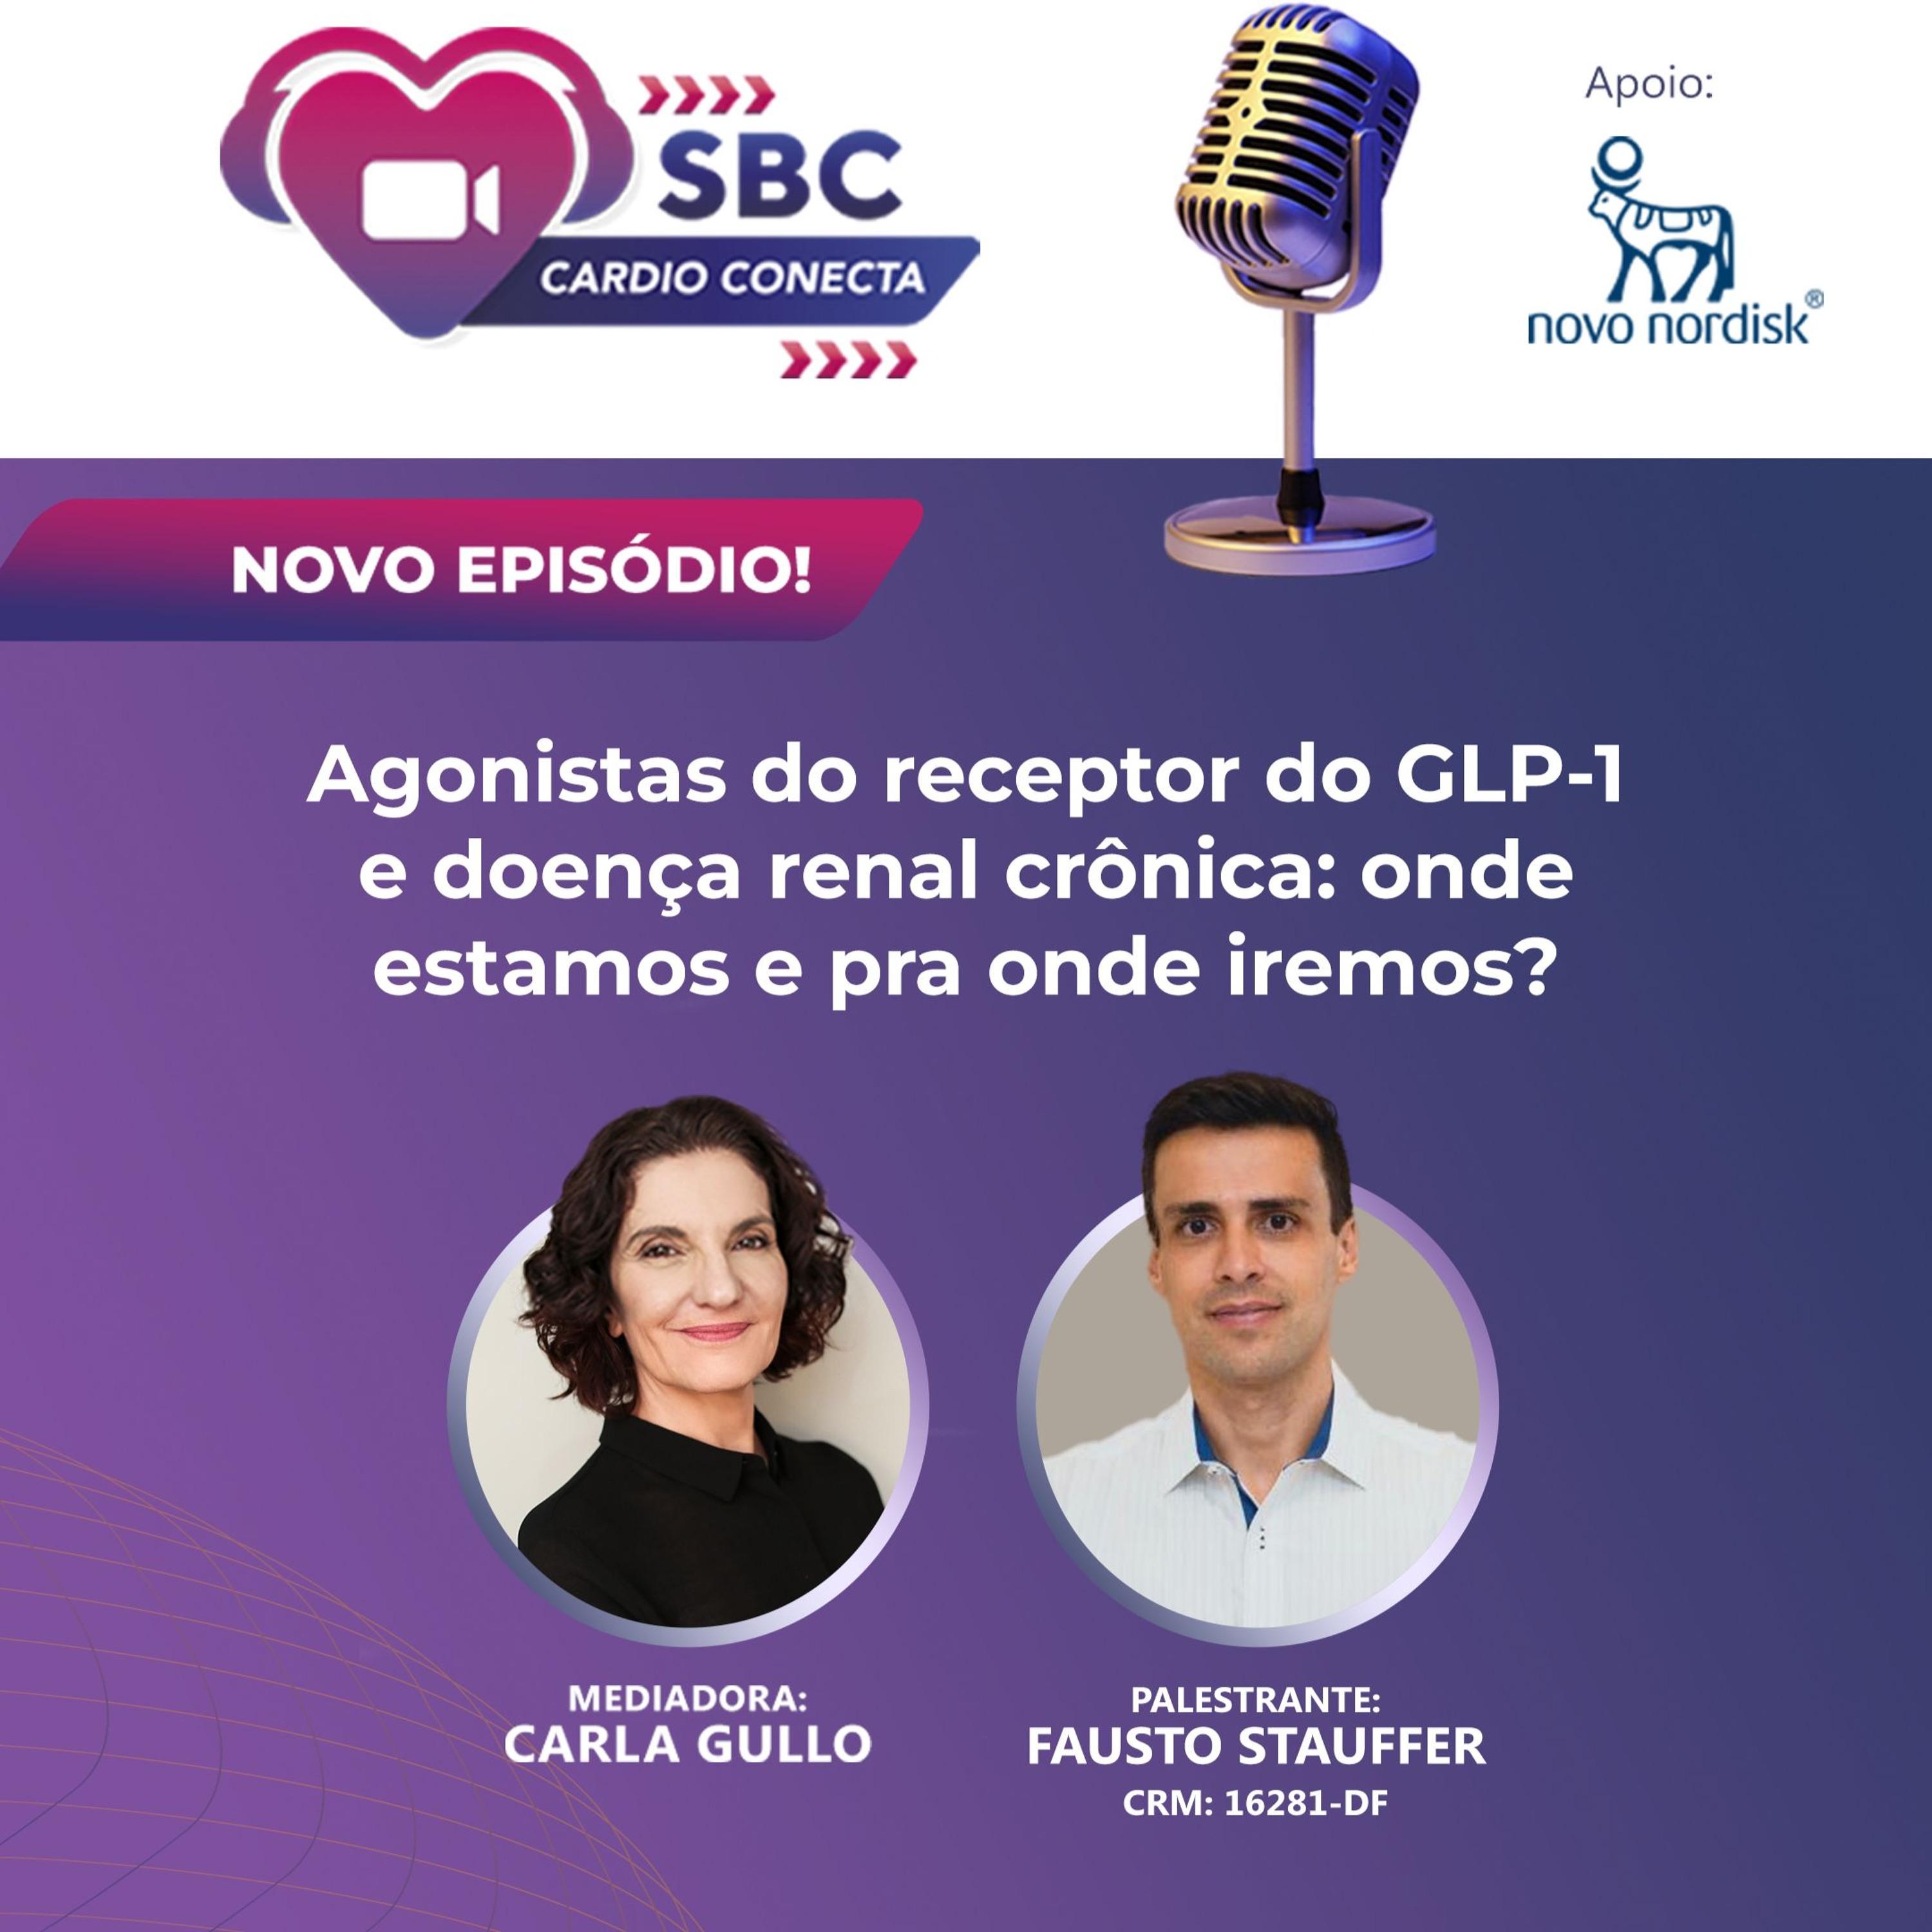 Confira a conversa entre o Dr. Fausto Stauffer e Carla Gullo sobre<br />agonistas do receptor do GLP-1 e doença renal crônica nesse<br />videocast imperdível.